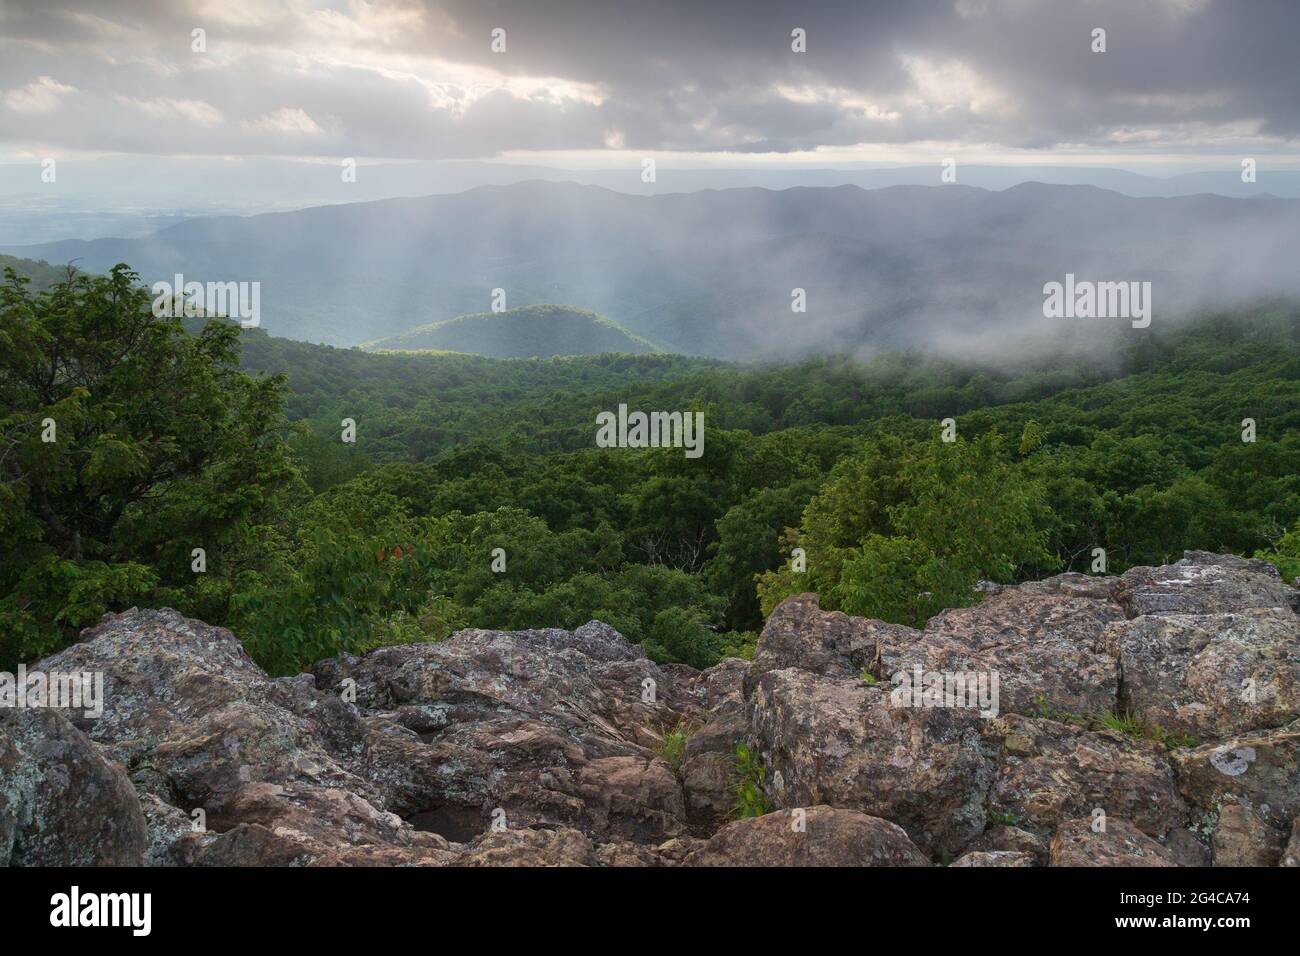 Les rayons de lumière du soleil couchant brillent à travers les nuages au-dessus des Appalaches dans le parc national de Shenandoah, Virginie, États-Unis Banque D'Images